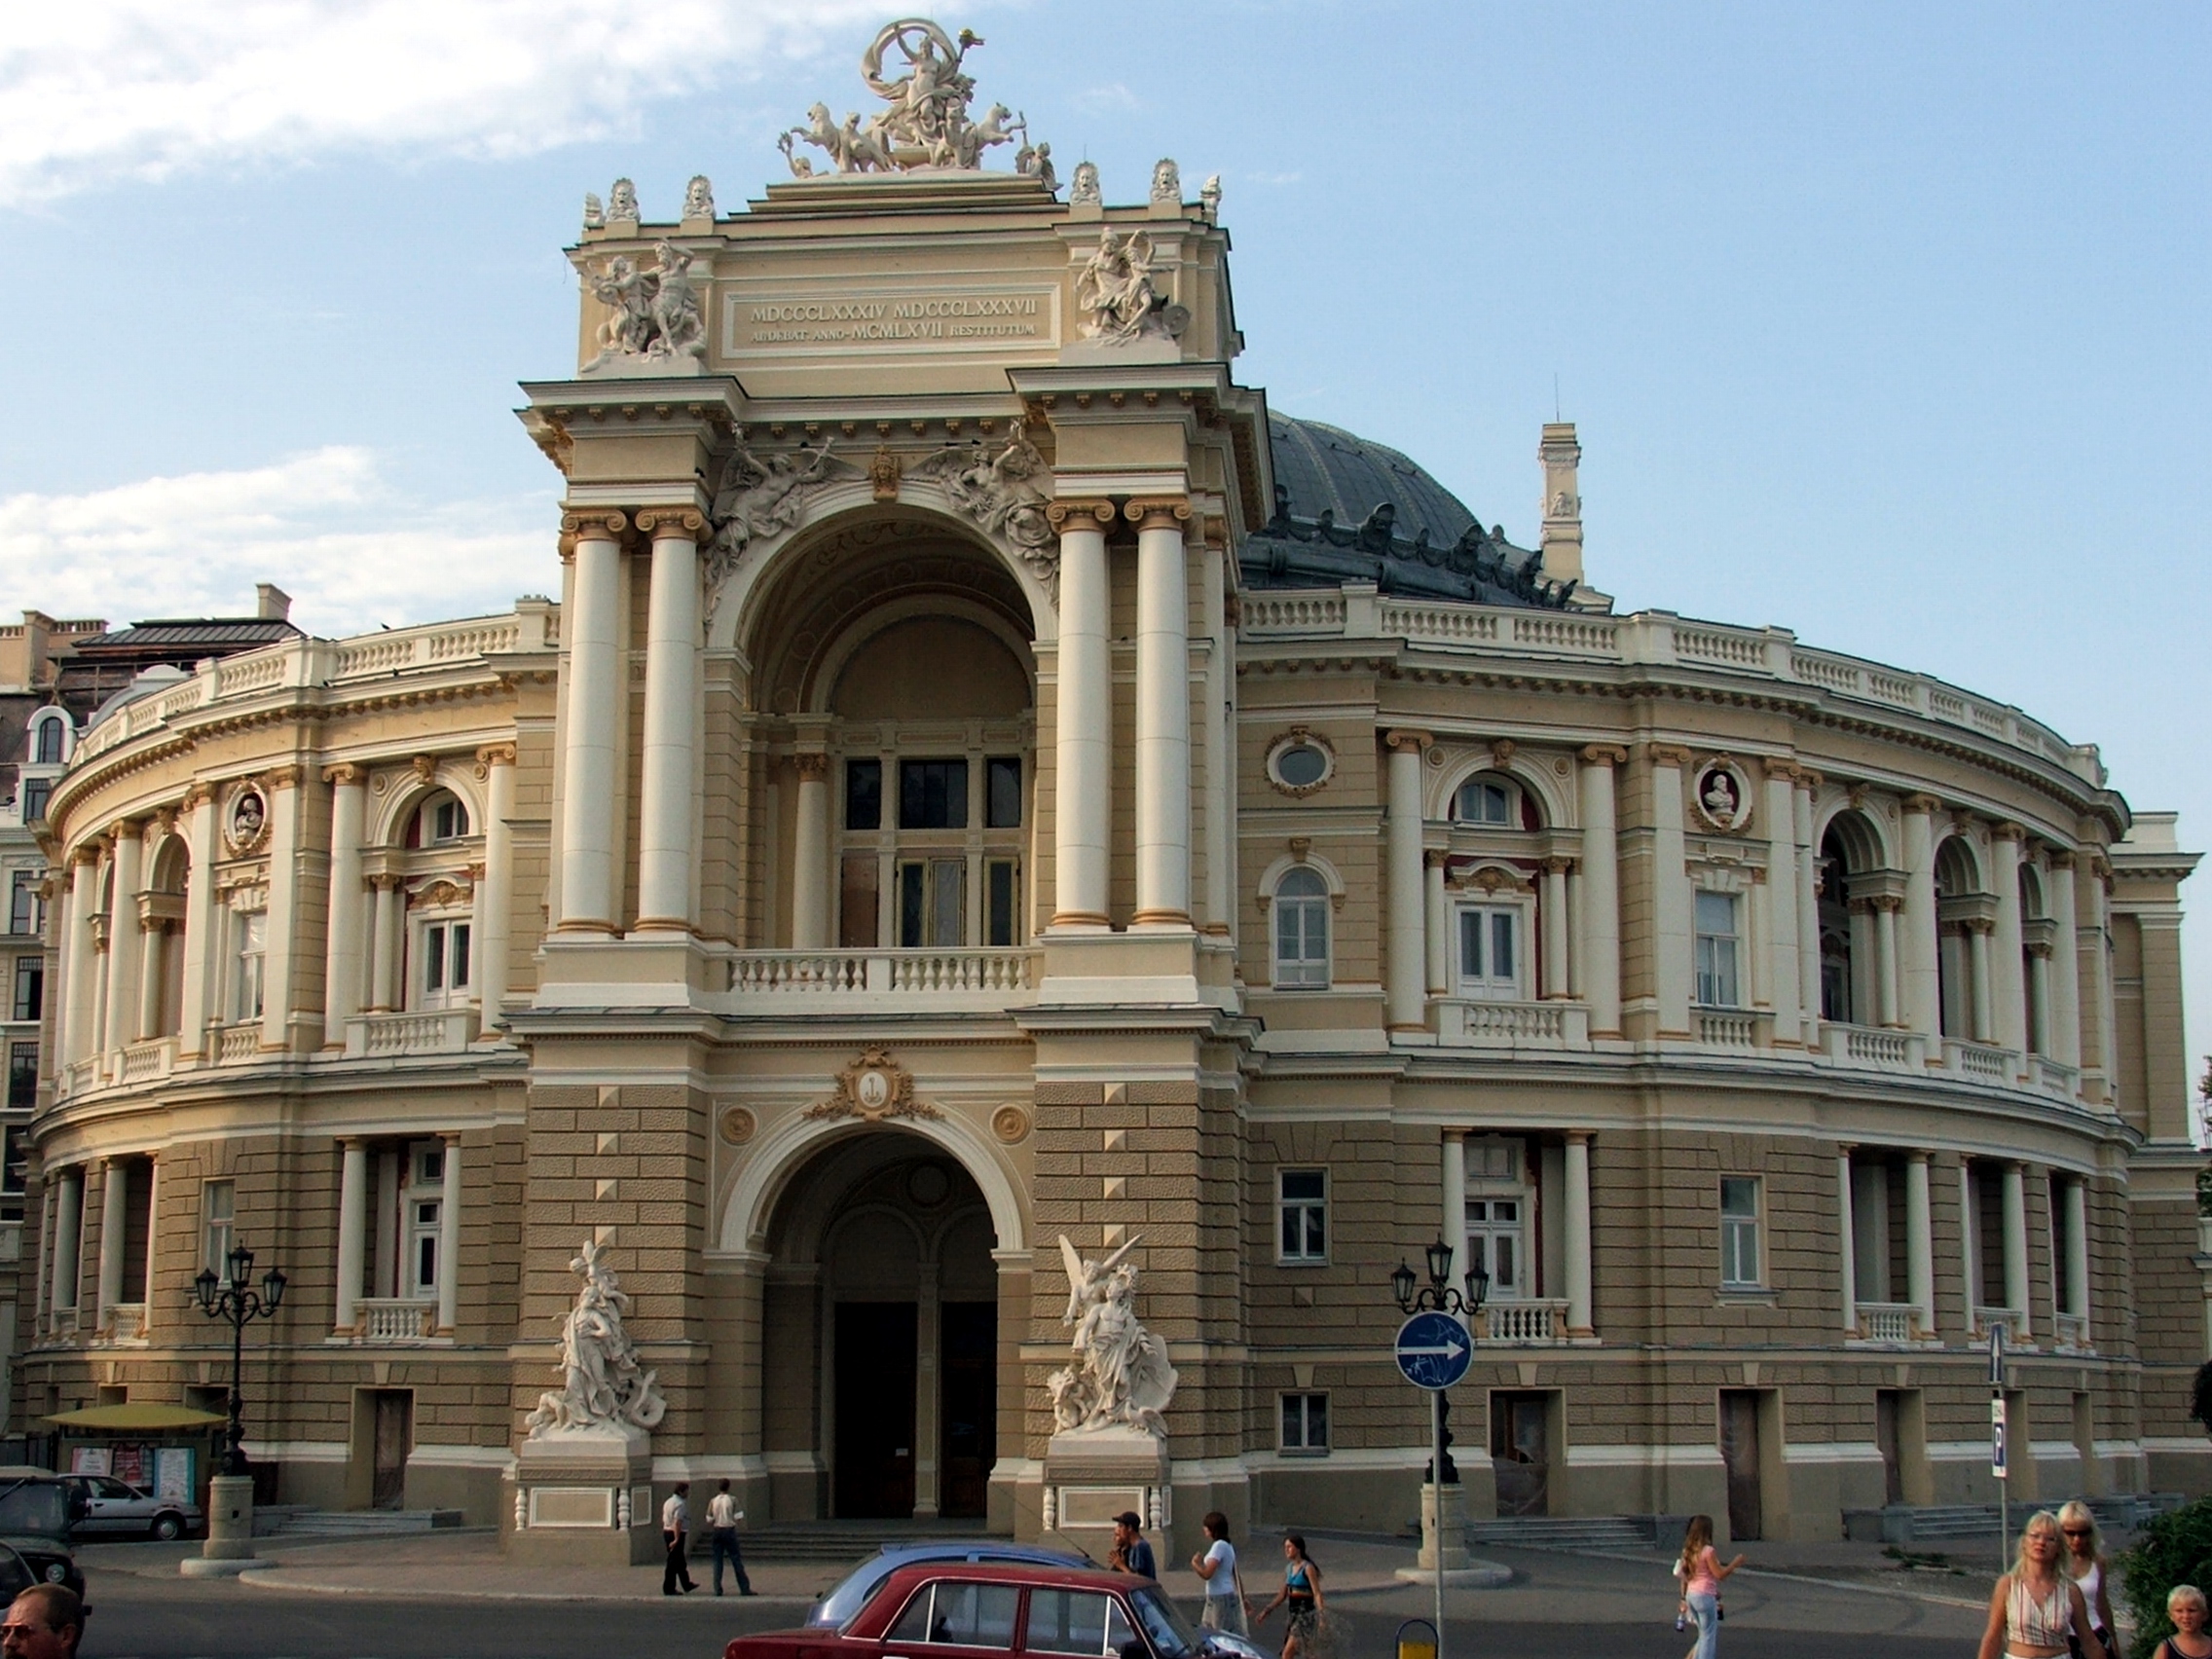 Odessa Opera Theatre